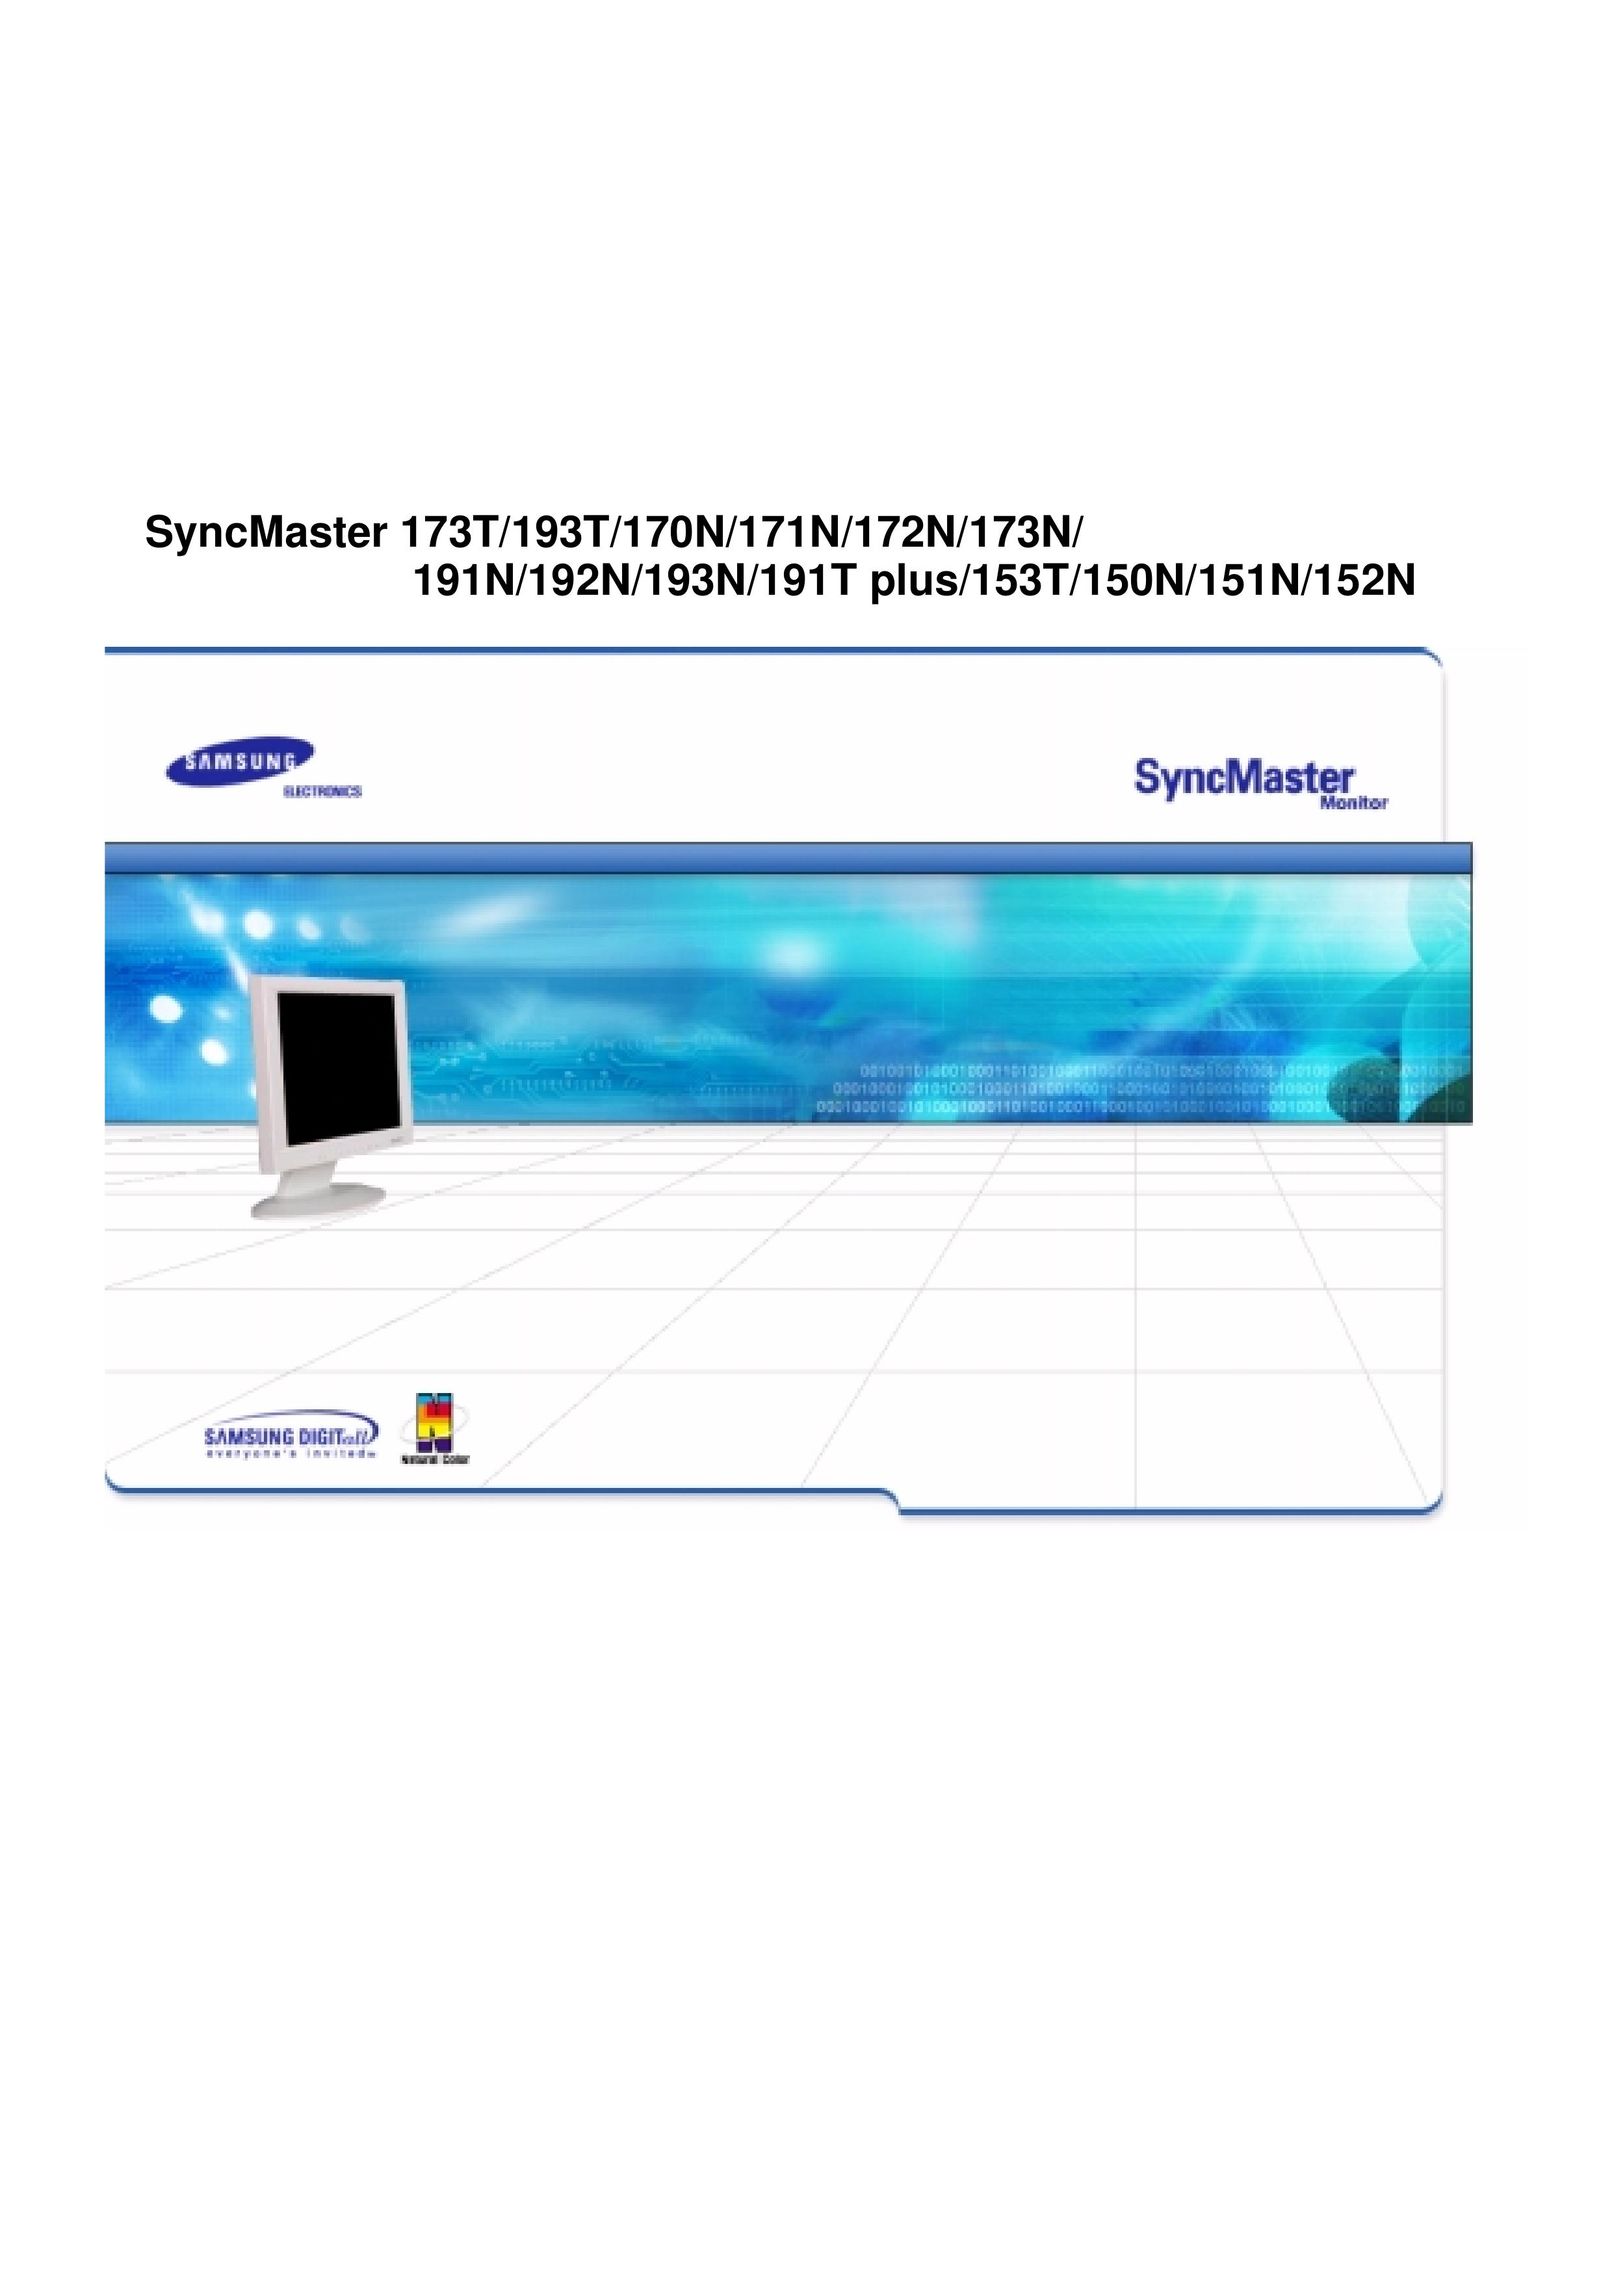 Samsung 150N Computer Monitor User Manual